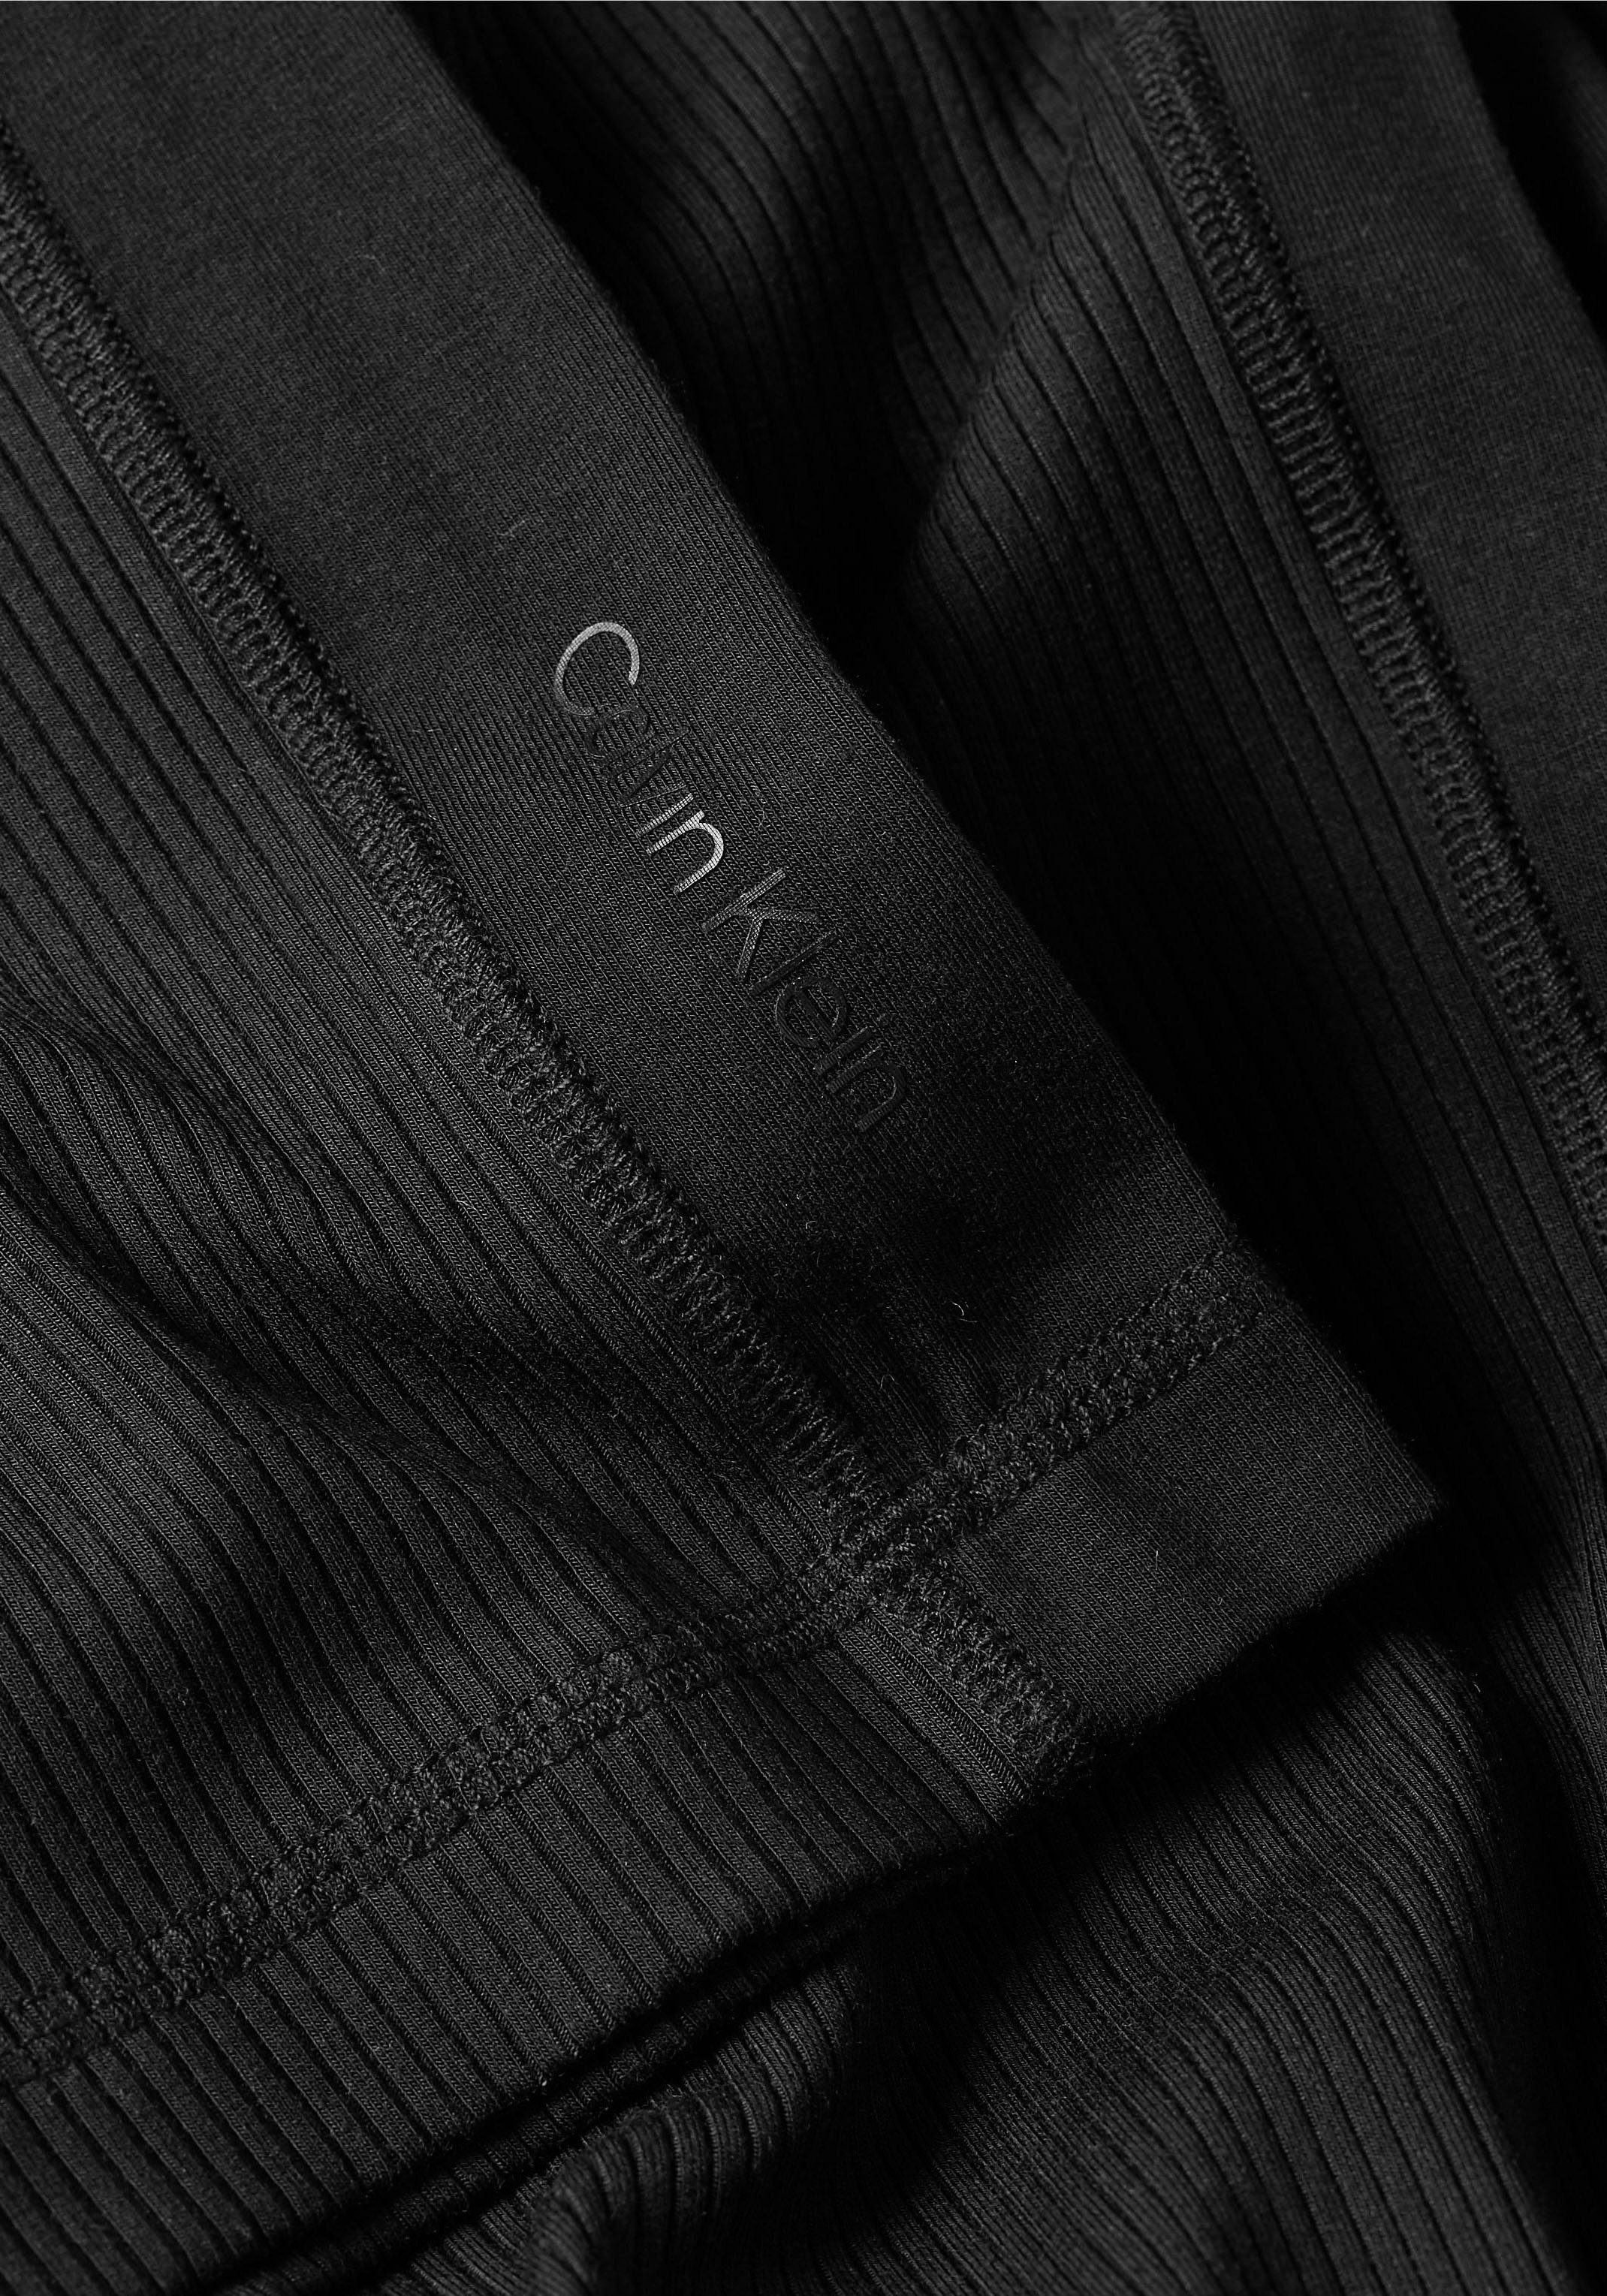 Damen Kleider Calvin Klein Jerseykleid MODAL RIB SOFT MOCK NECK DRESS mit Rippstruktur